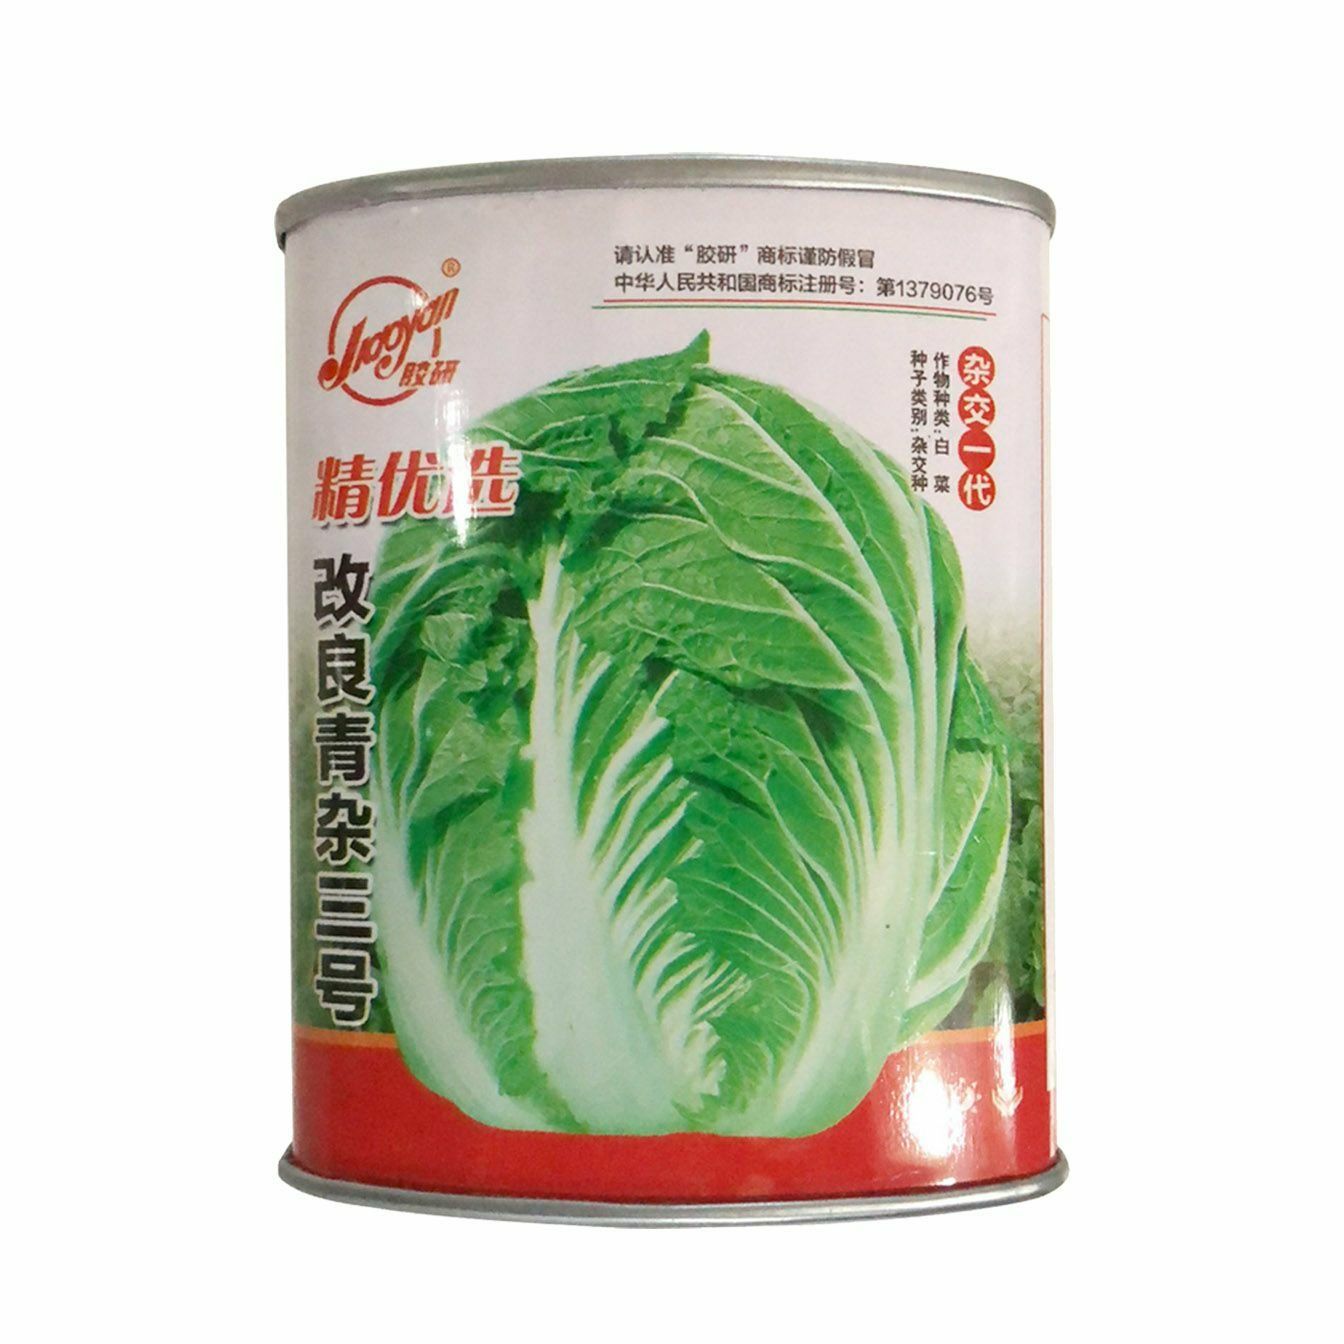 夏邑县 精选 改良青杂三号 白菜种子50克/罐 产量高 抗病性强